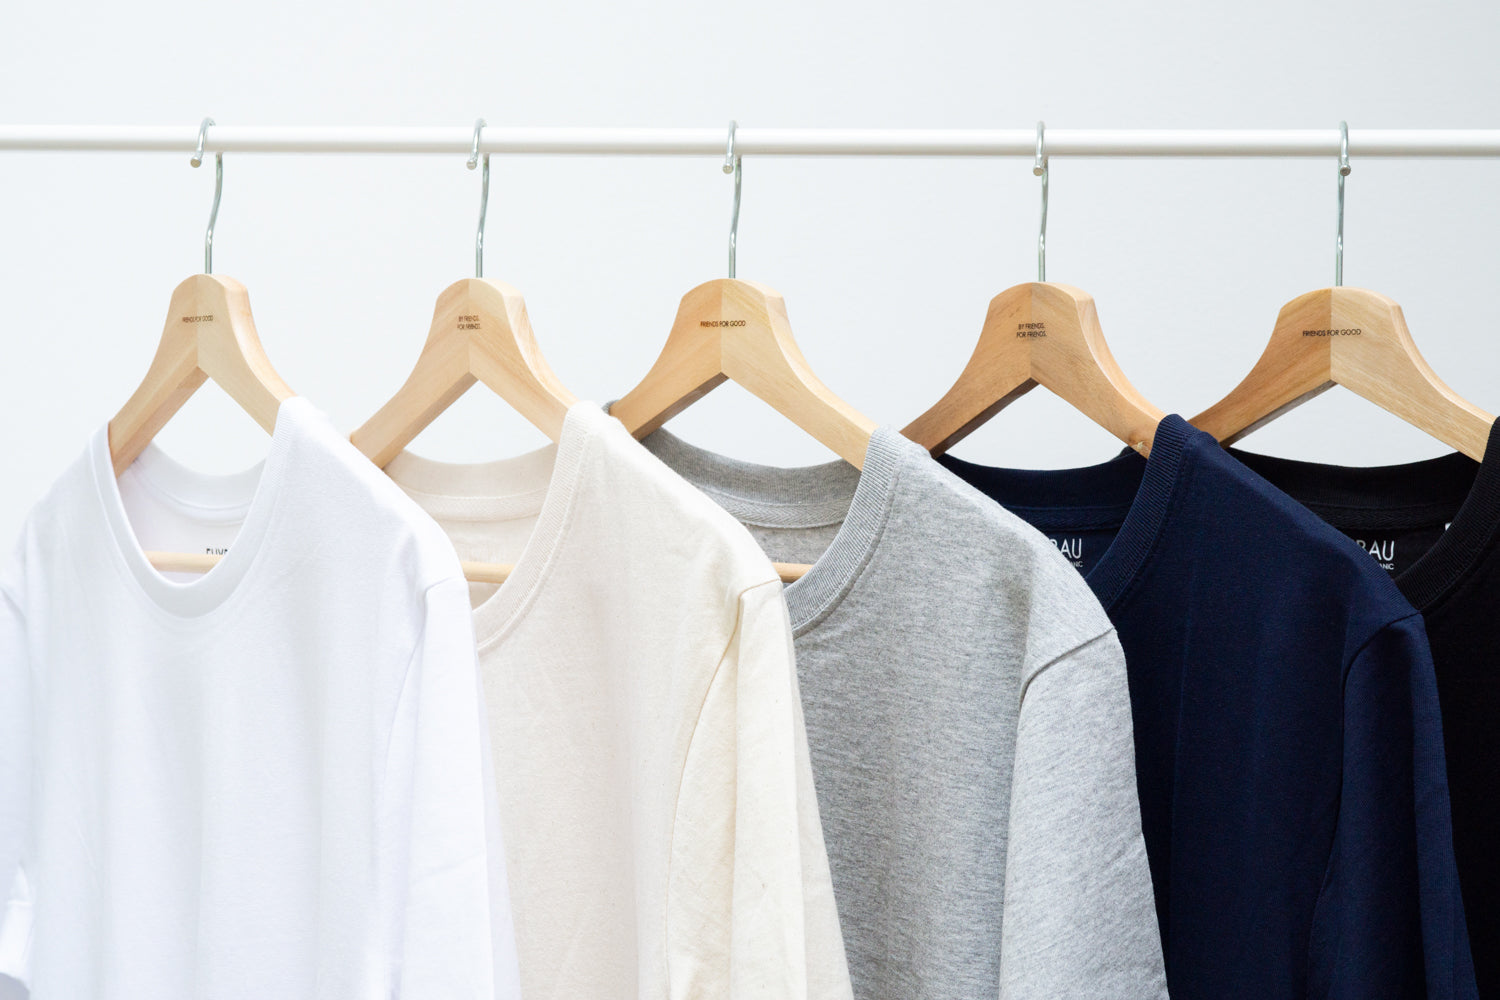 Hochwertige Basic T-Shirts sind die Basis für deinen Casual Look. Achte auf neutrale Farben um dir vielseitige Kombinationsmöglichkeiten offen zu halten.